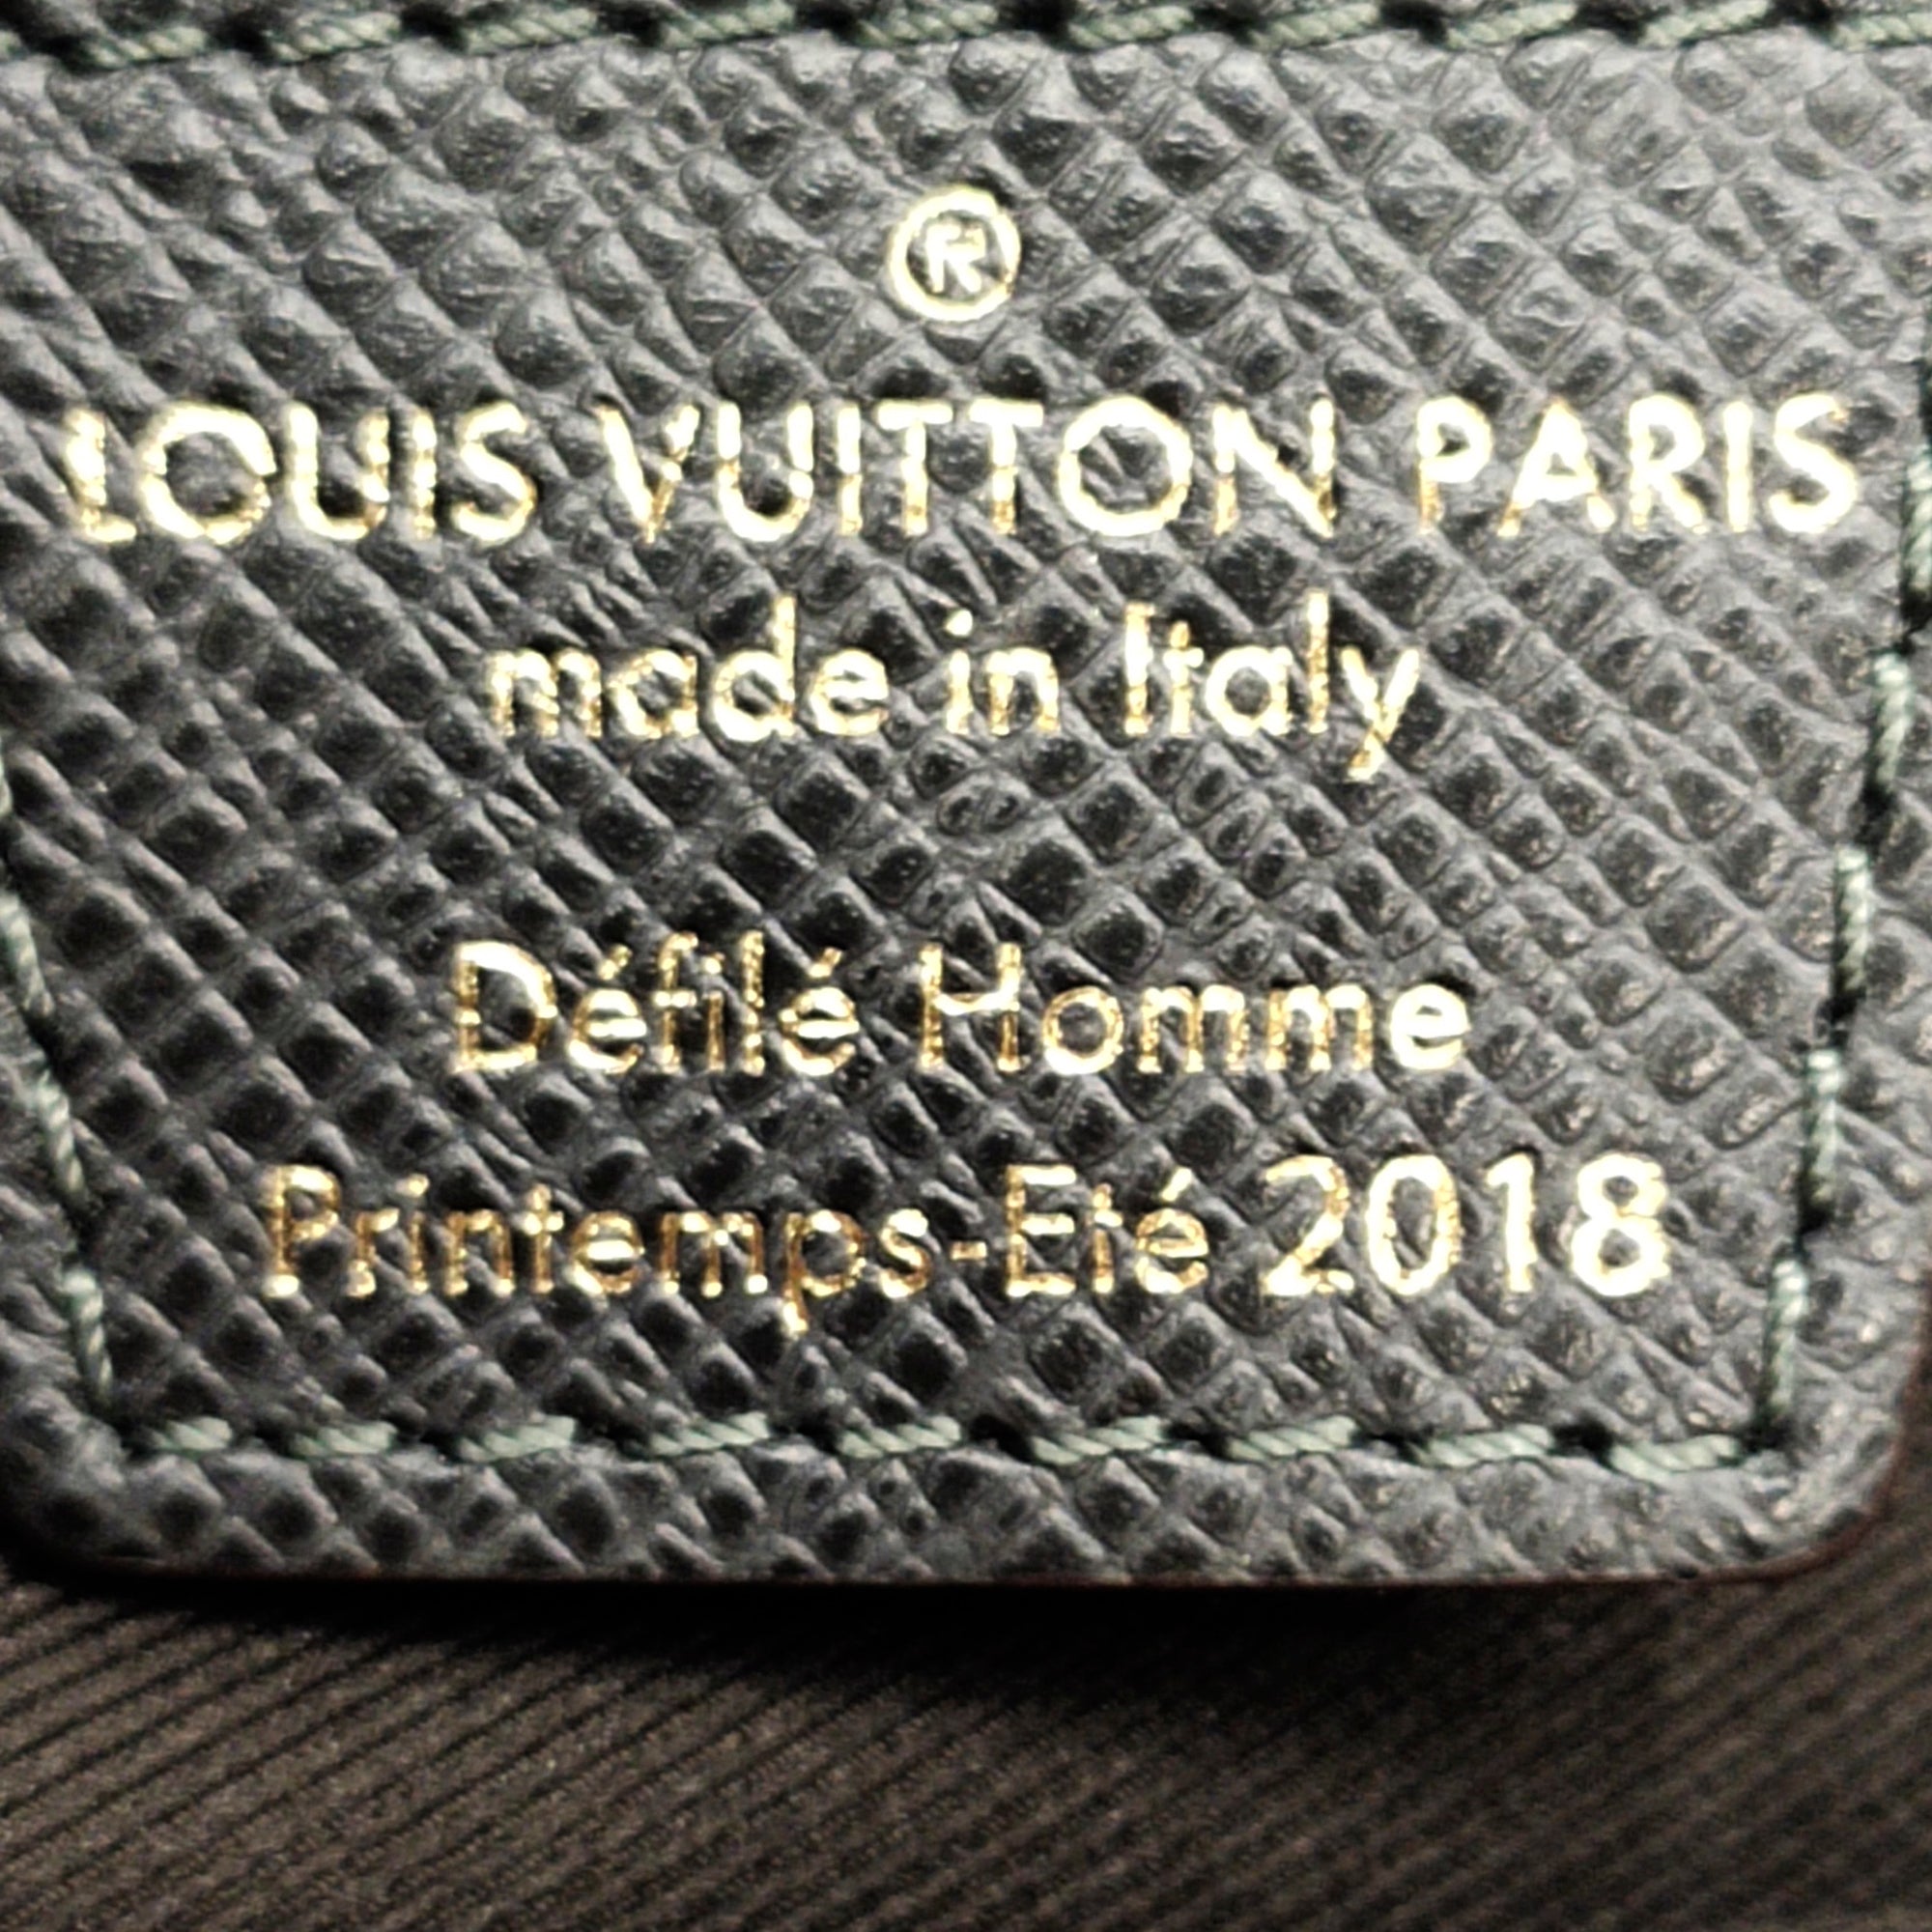 Louis Vuitton Messenger PM Monogram Outdoor Blue Pacific Split at